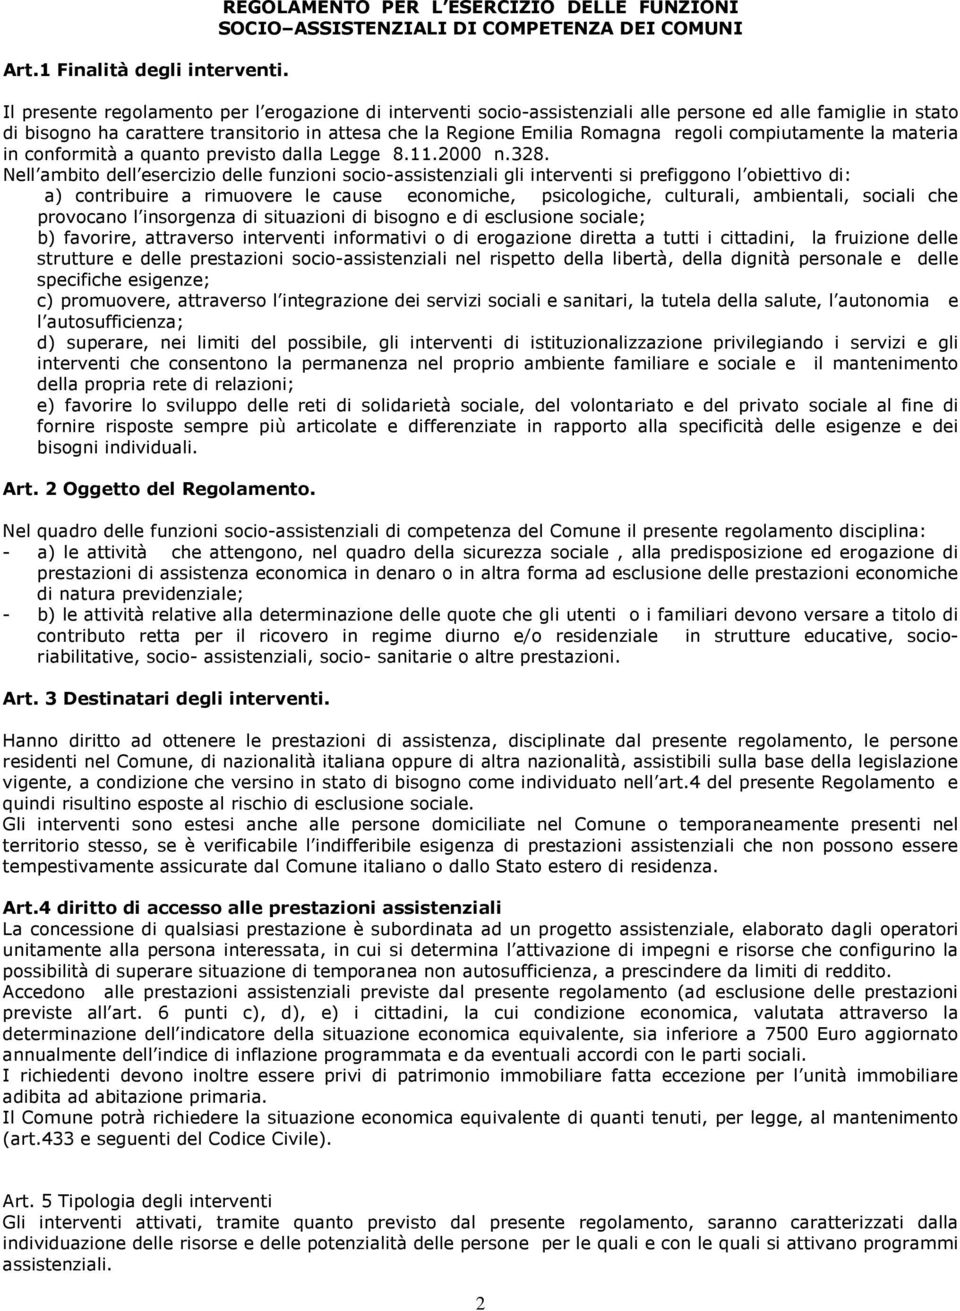 stato di bisogno ha carattere transitorio in attesa che la Regione Emilia Romagna regoli compiutamente la materia in conformità a quanto previsto dalla Legge 8.11.2000 n.328.